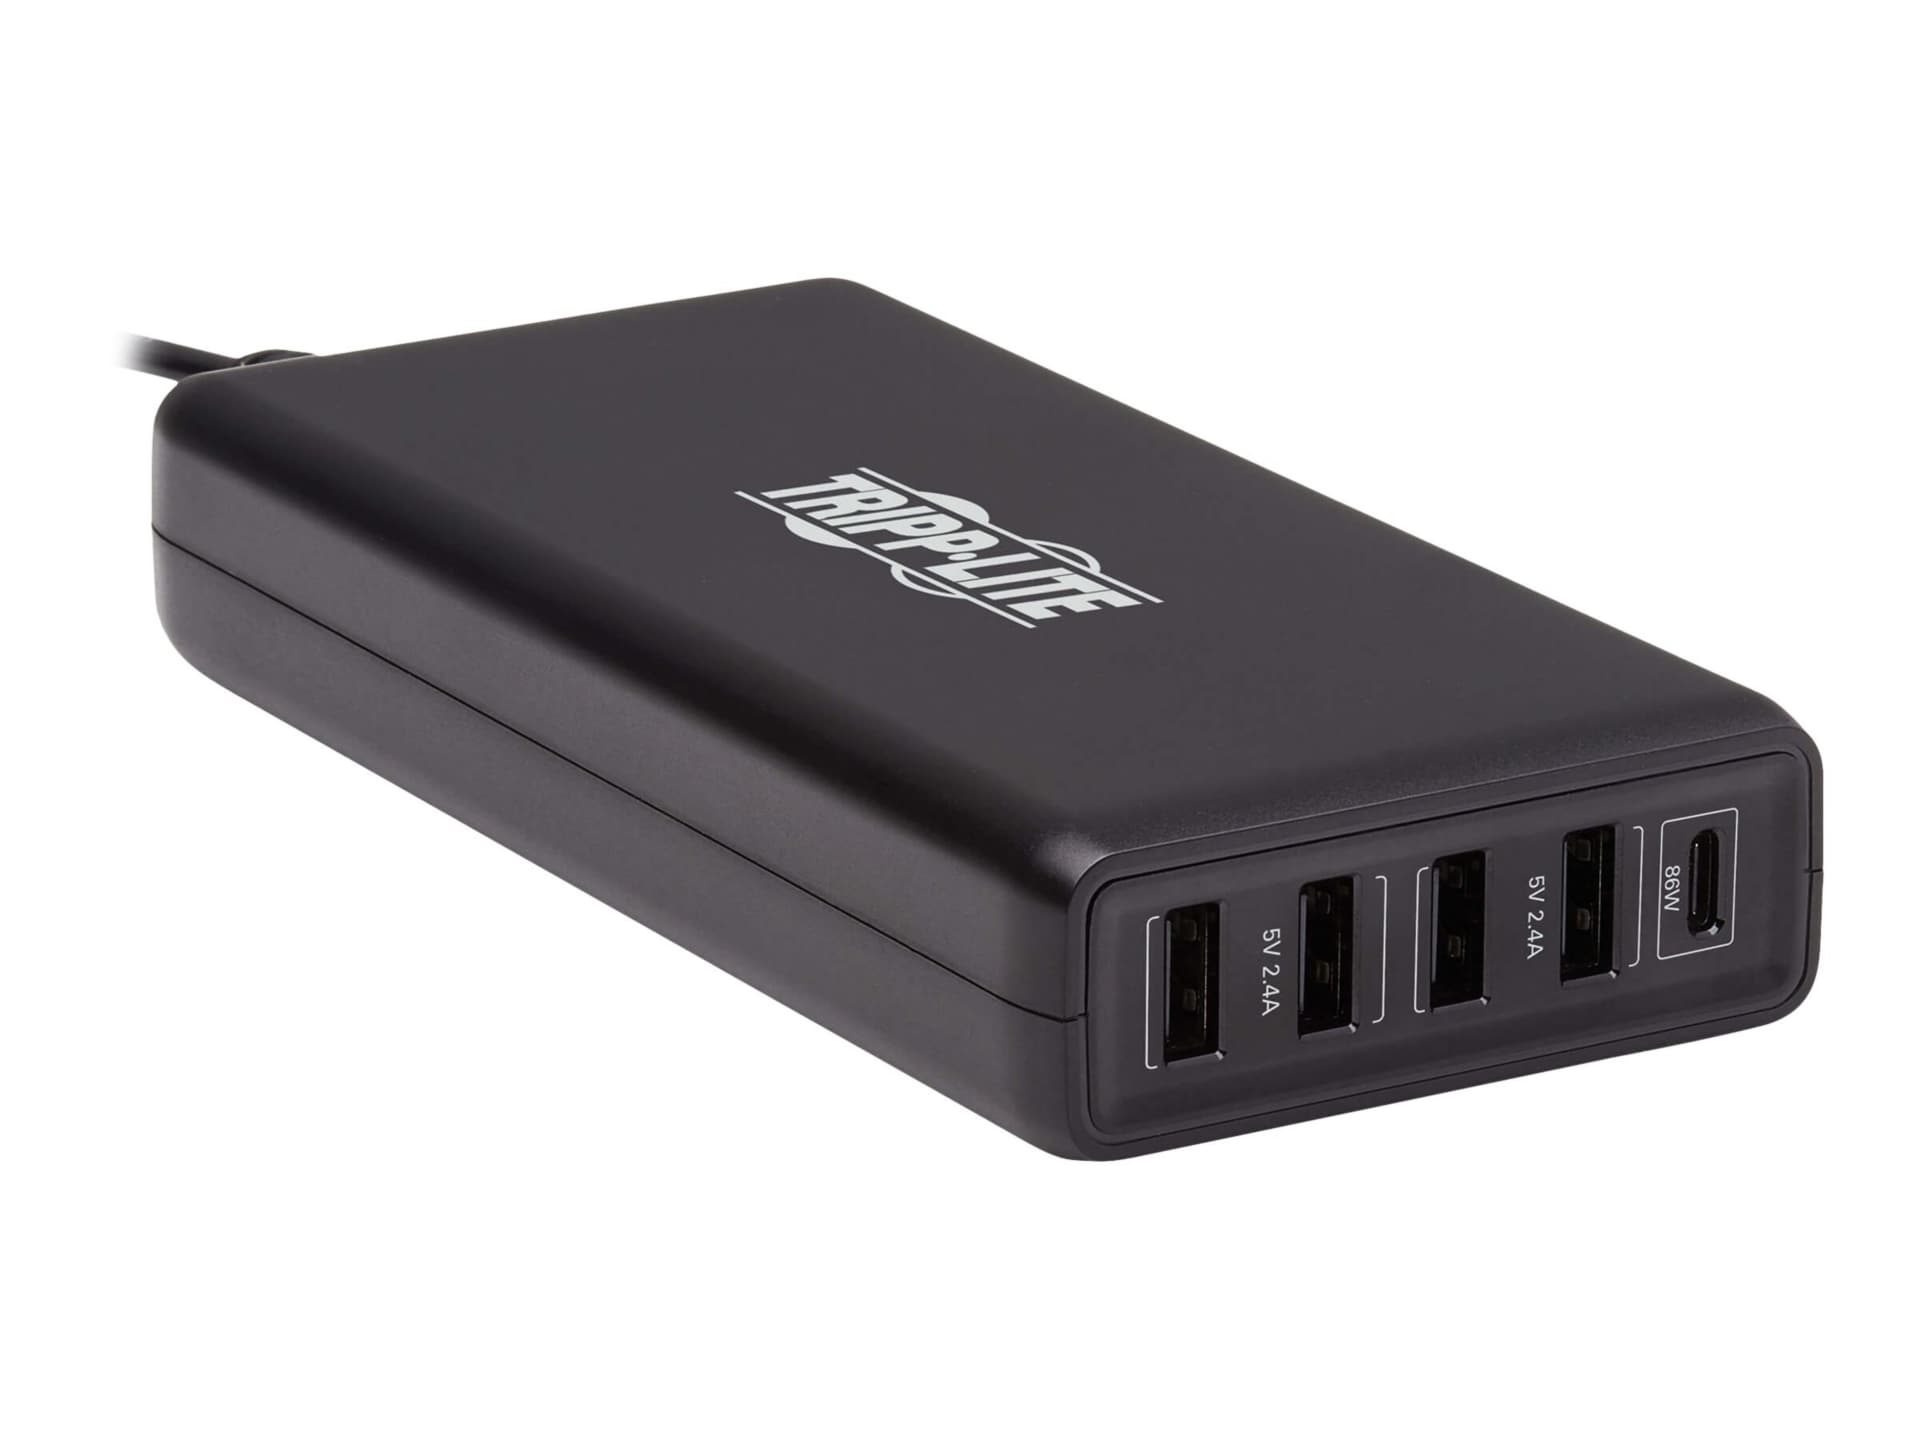 Station de recharge USB Tripp Lite à 5 ports 4 USB-A avec détection automatique 1 USB C 110 W